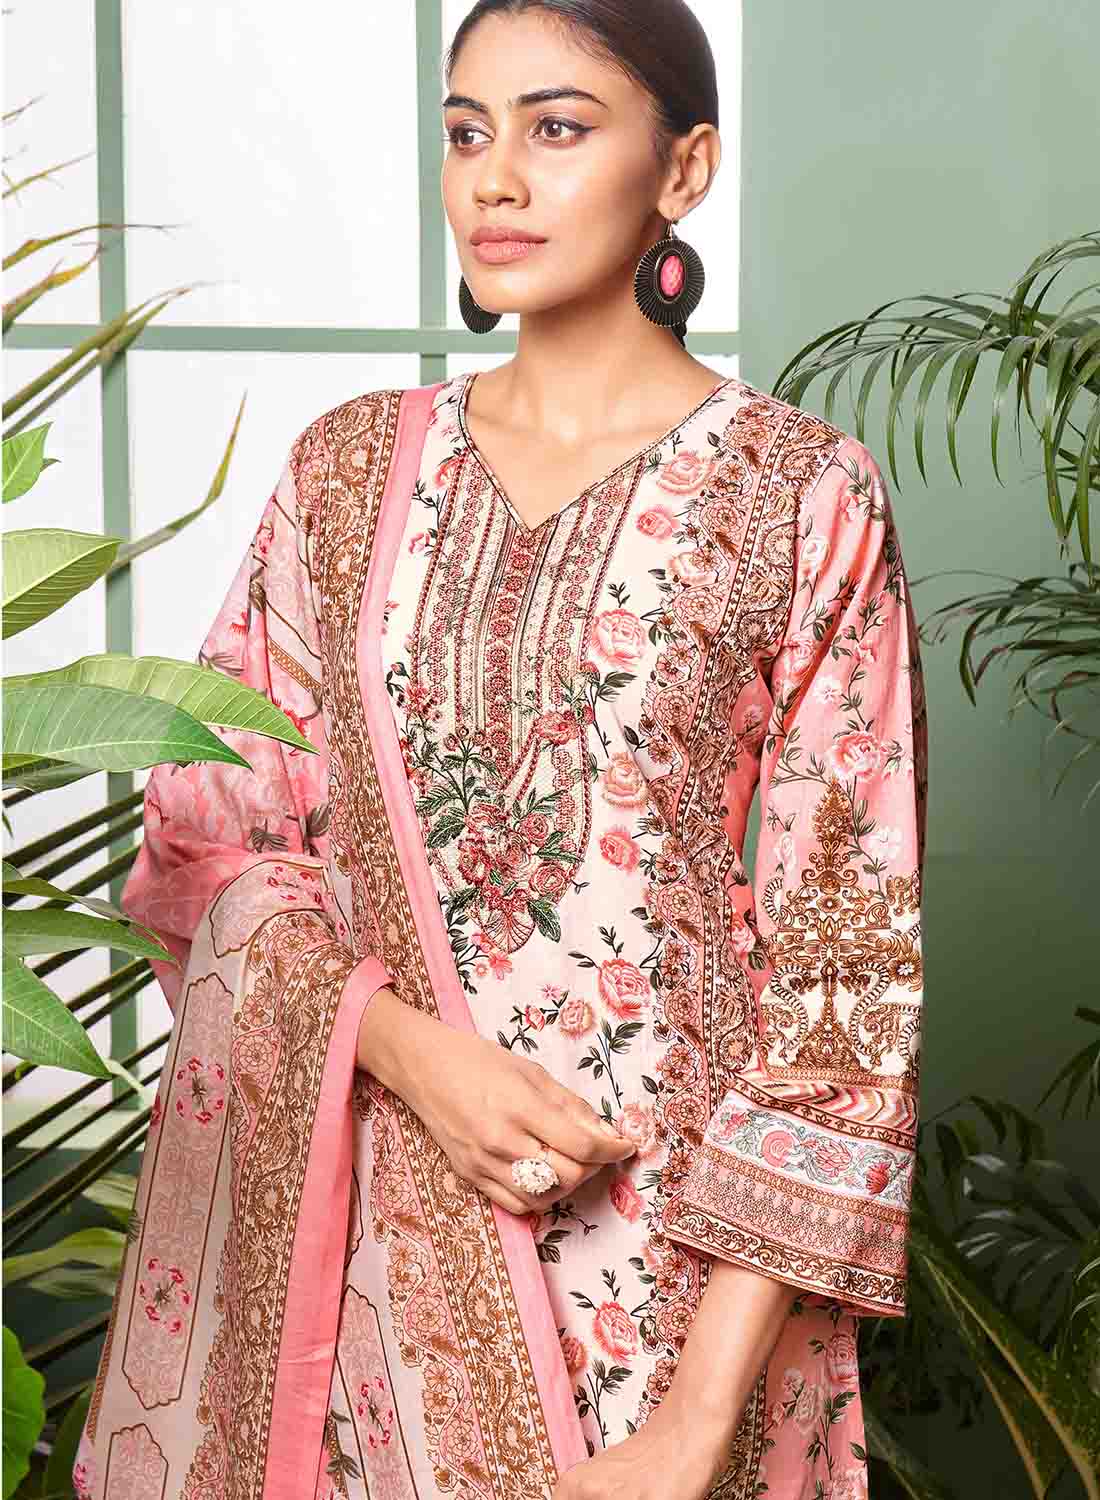 Women's Pure Cotton Cambric Pakistani Print Unstitched Suit Material